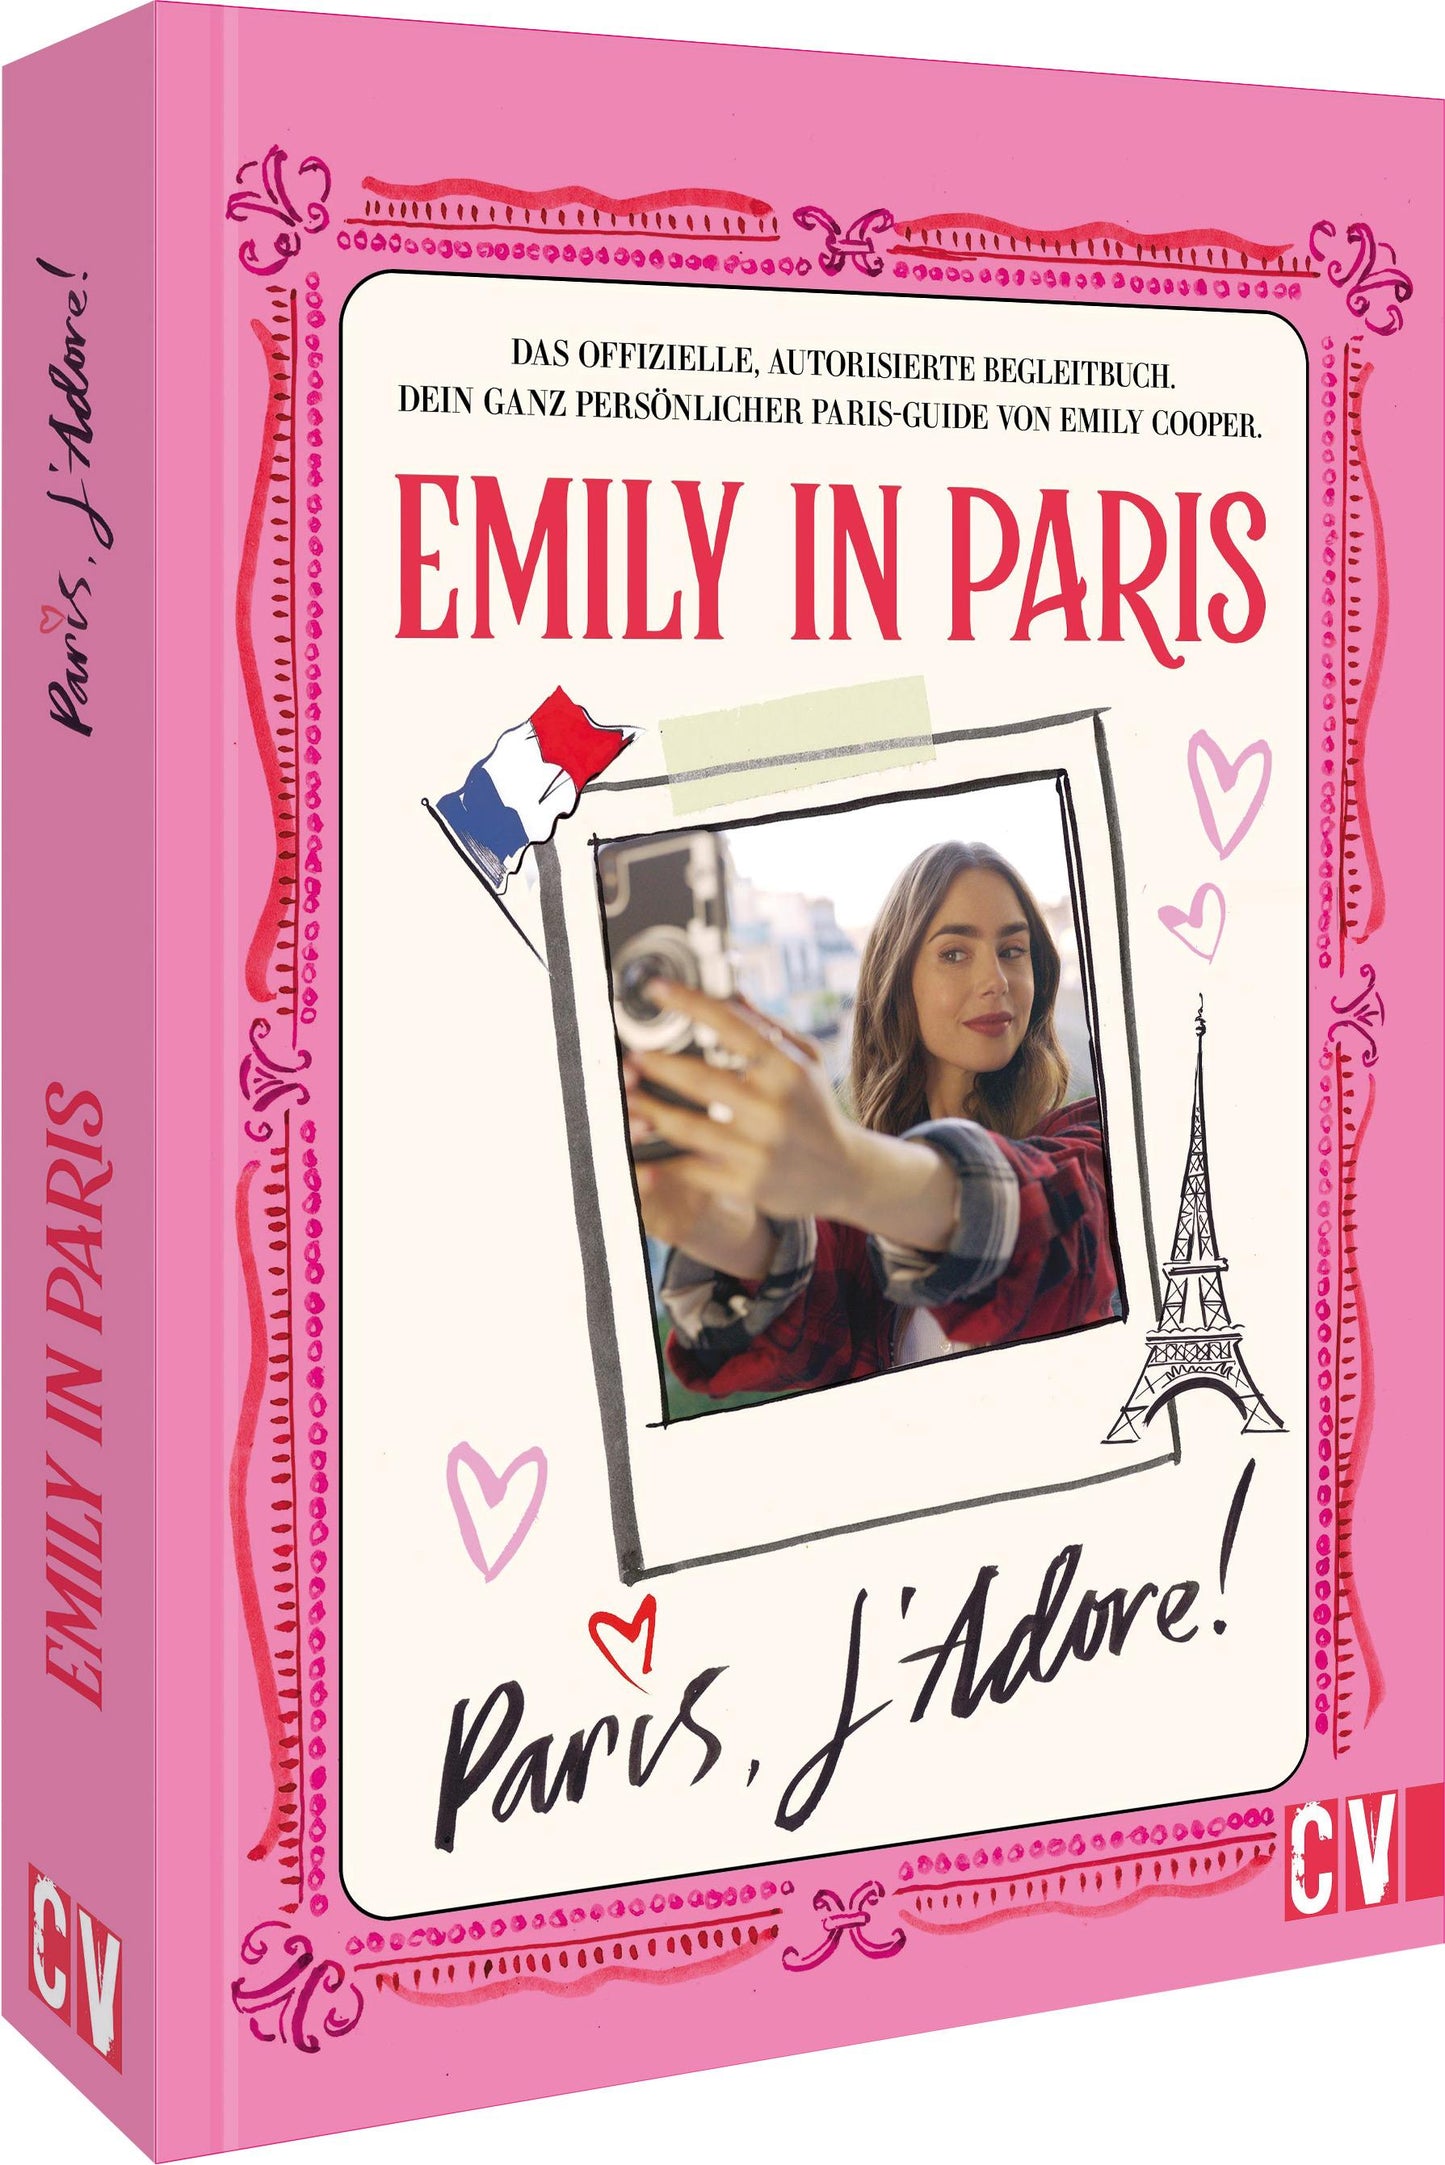 Emily in Paris – Paris, J'Adore!: Das offizielle Begleitbuch zur beliebten Netflix-Serie »Emily in Paris«. Dein ganz persönlicher Paris-Guide von Emily Cooper.